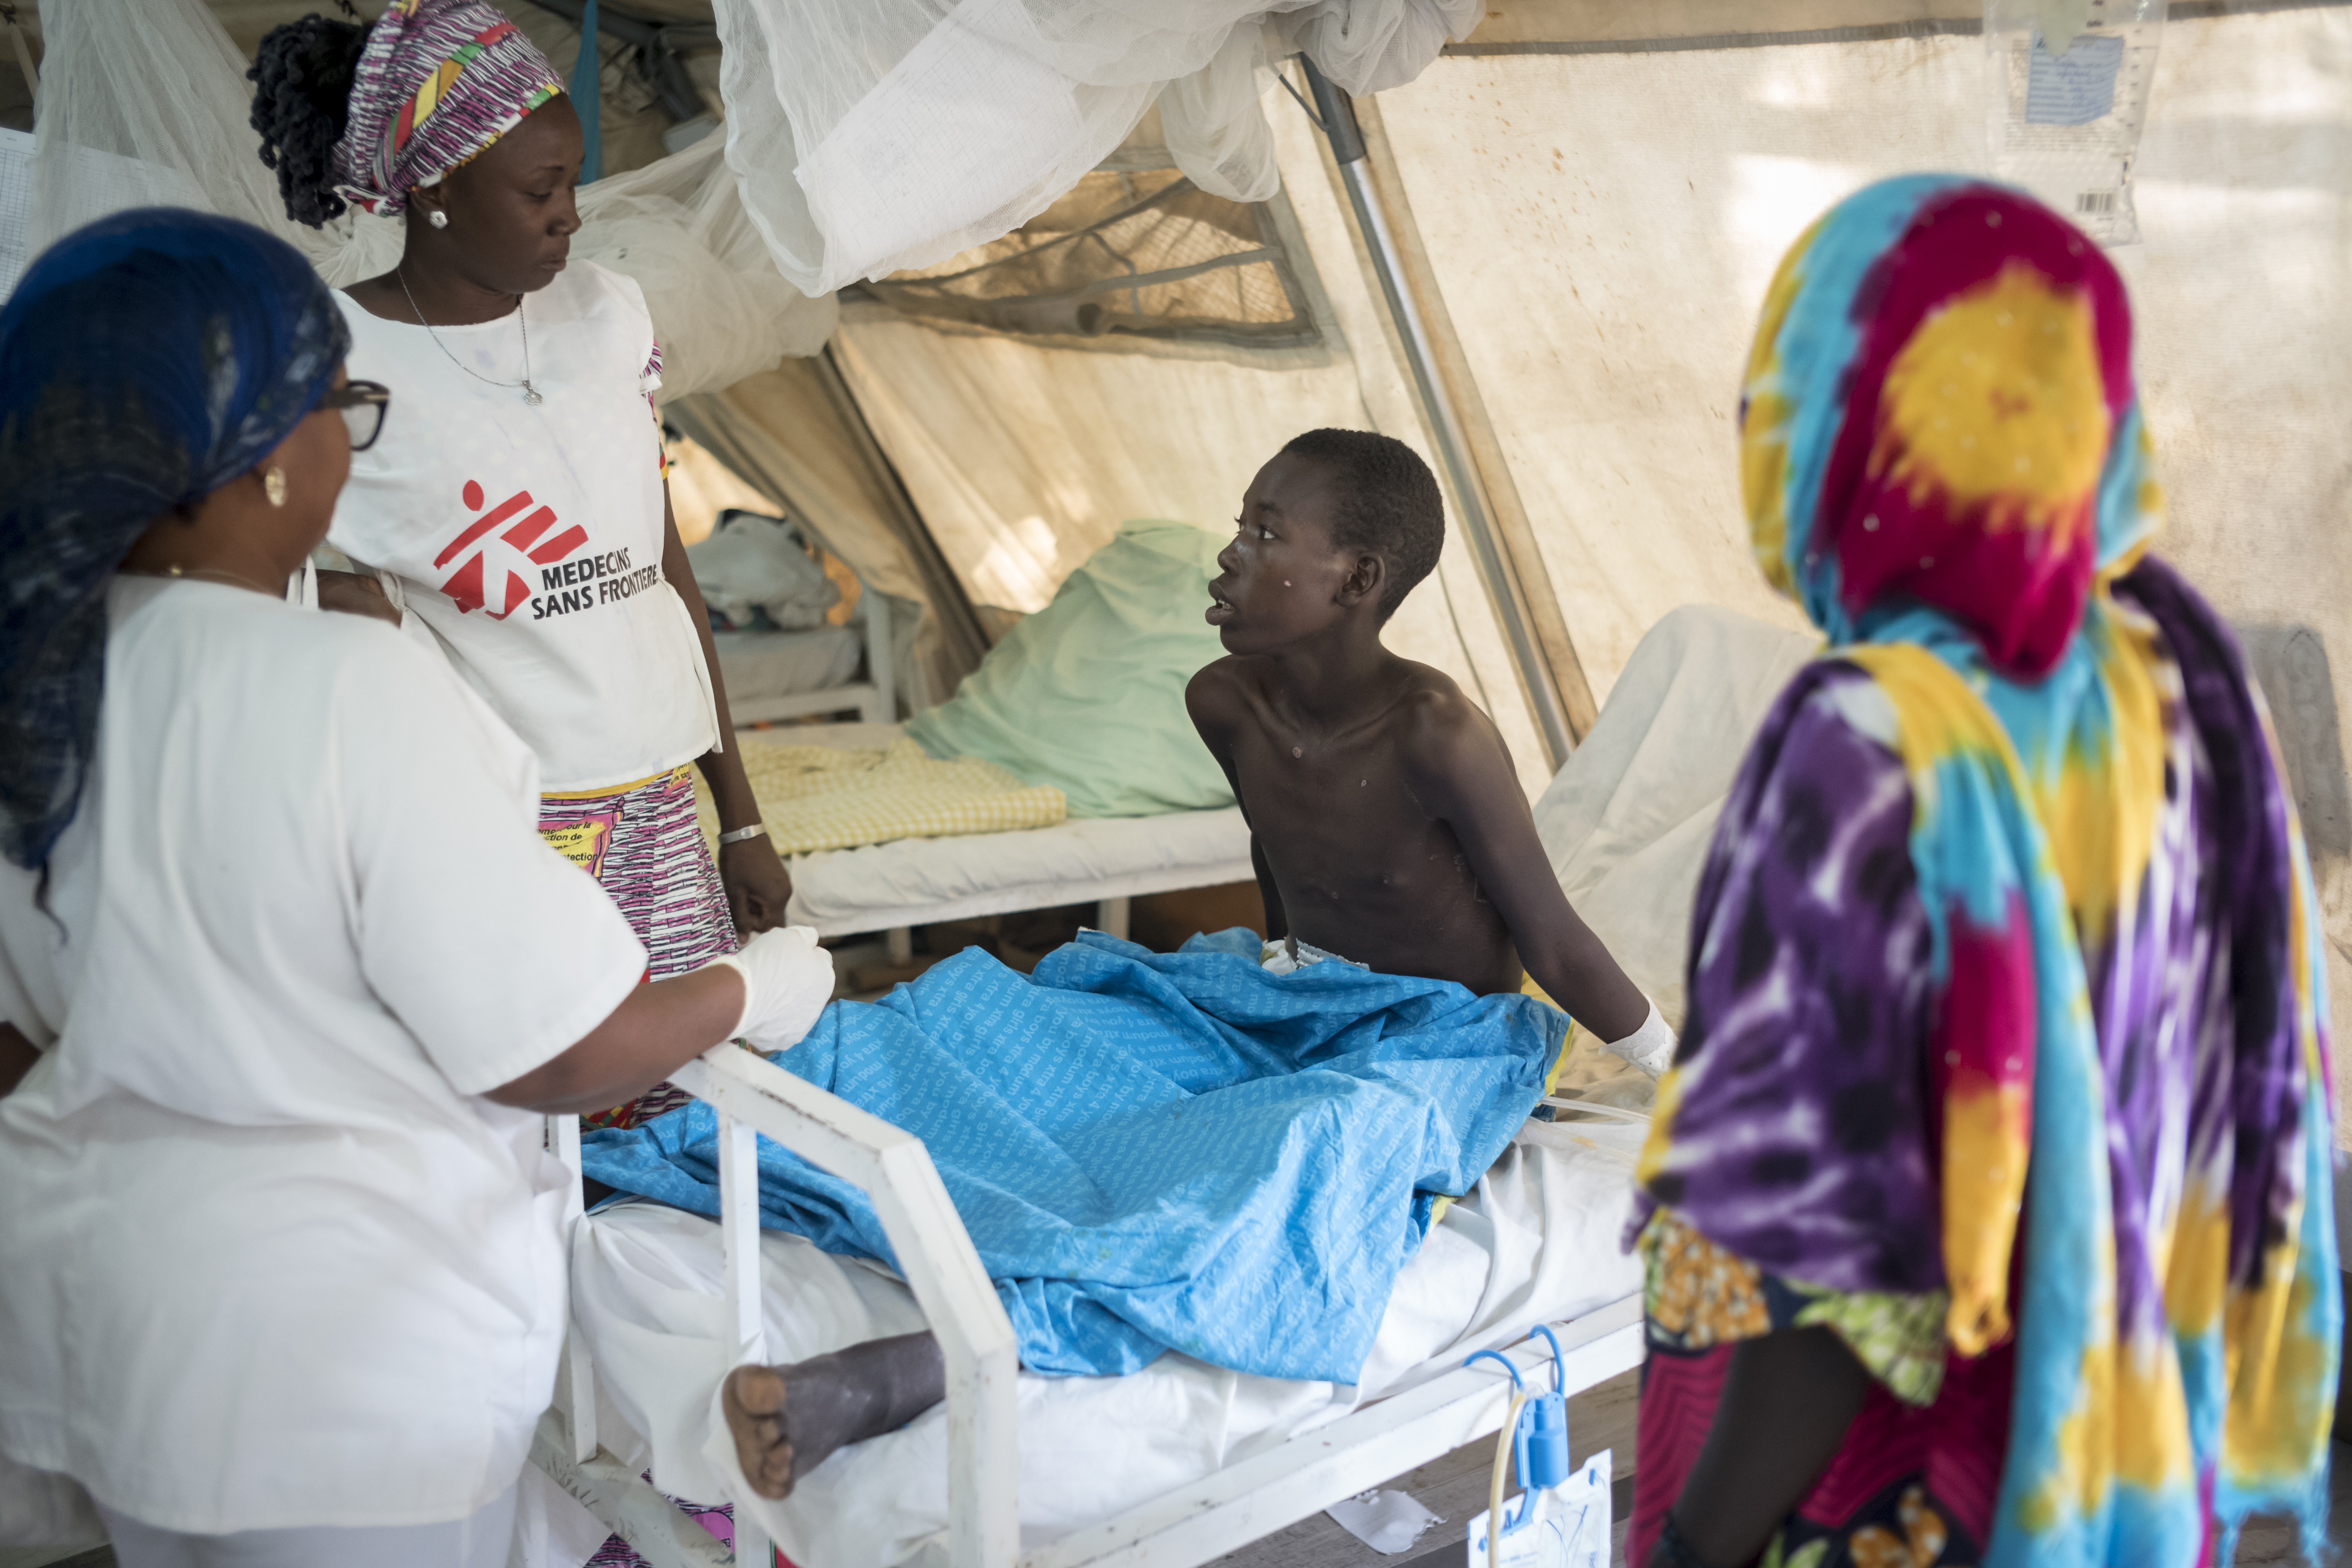  Ali Mala, 17 ans, est soigné à l'hôpital régional de Maroua après avoir été blessé dans un attentat-suicide le 31 décembre 2017 à Mbia. Il a été gravement blessé par un éclat d'obus et a été transféré à l'hôpital de Maroua en raison de la gravité de ses blessures. © Sylvain Cherkaoui/COSMOS, janvier 2018